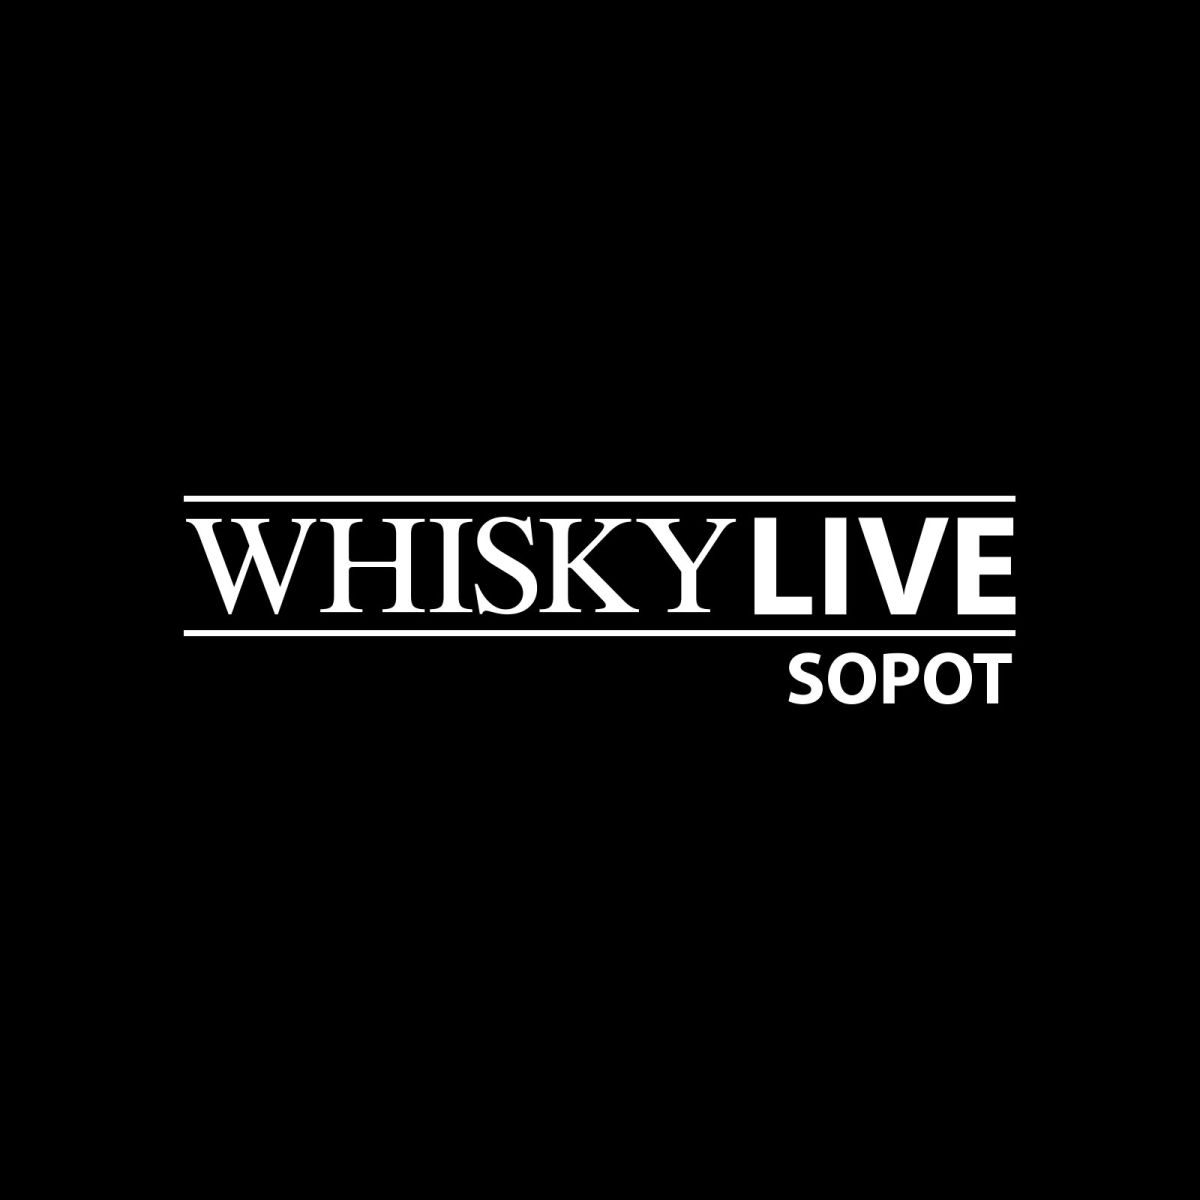 Najlepsza whisky świata będzie licytowana w Sopocie